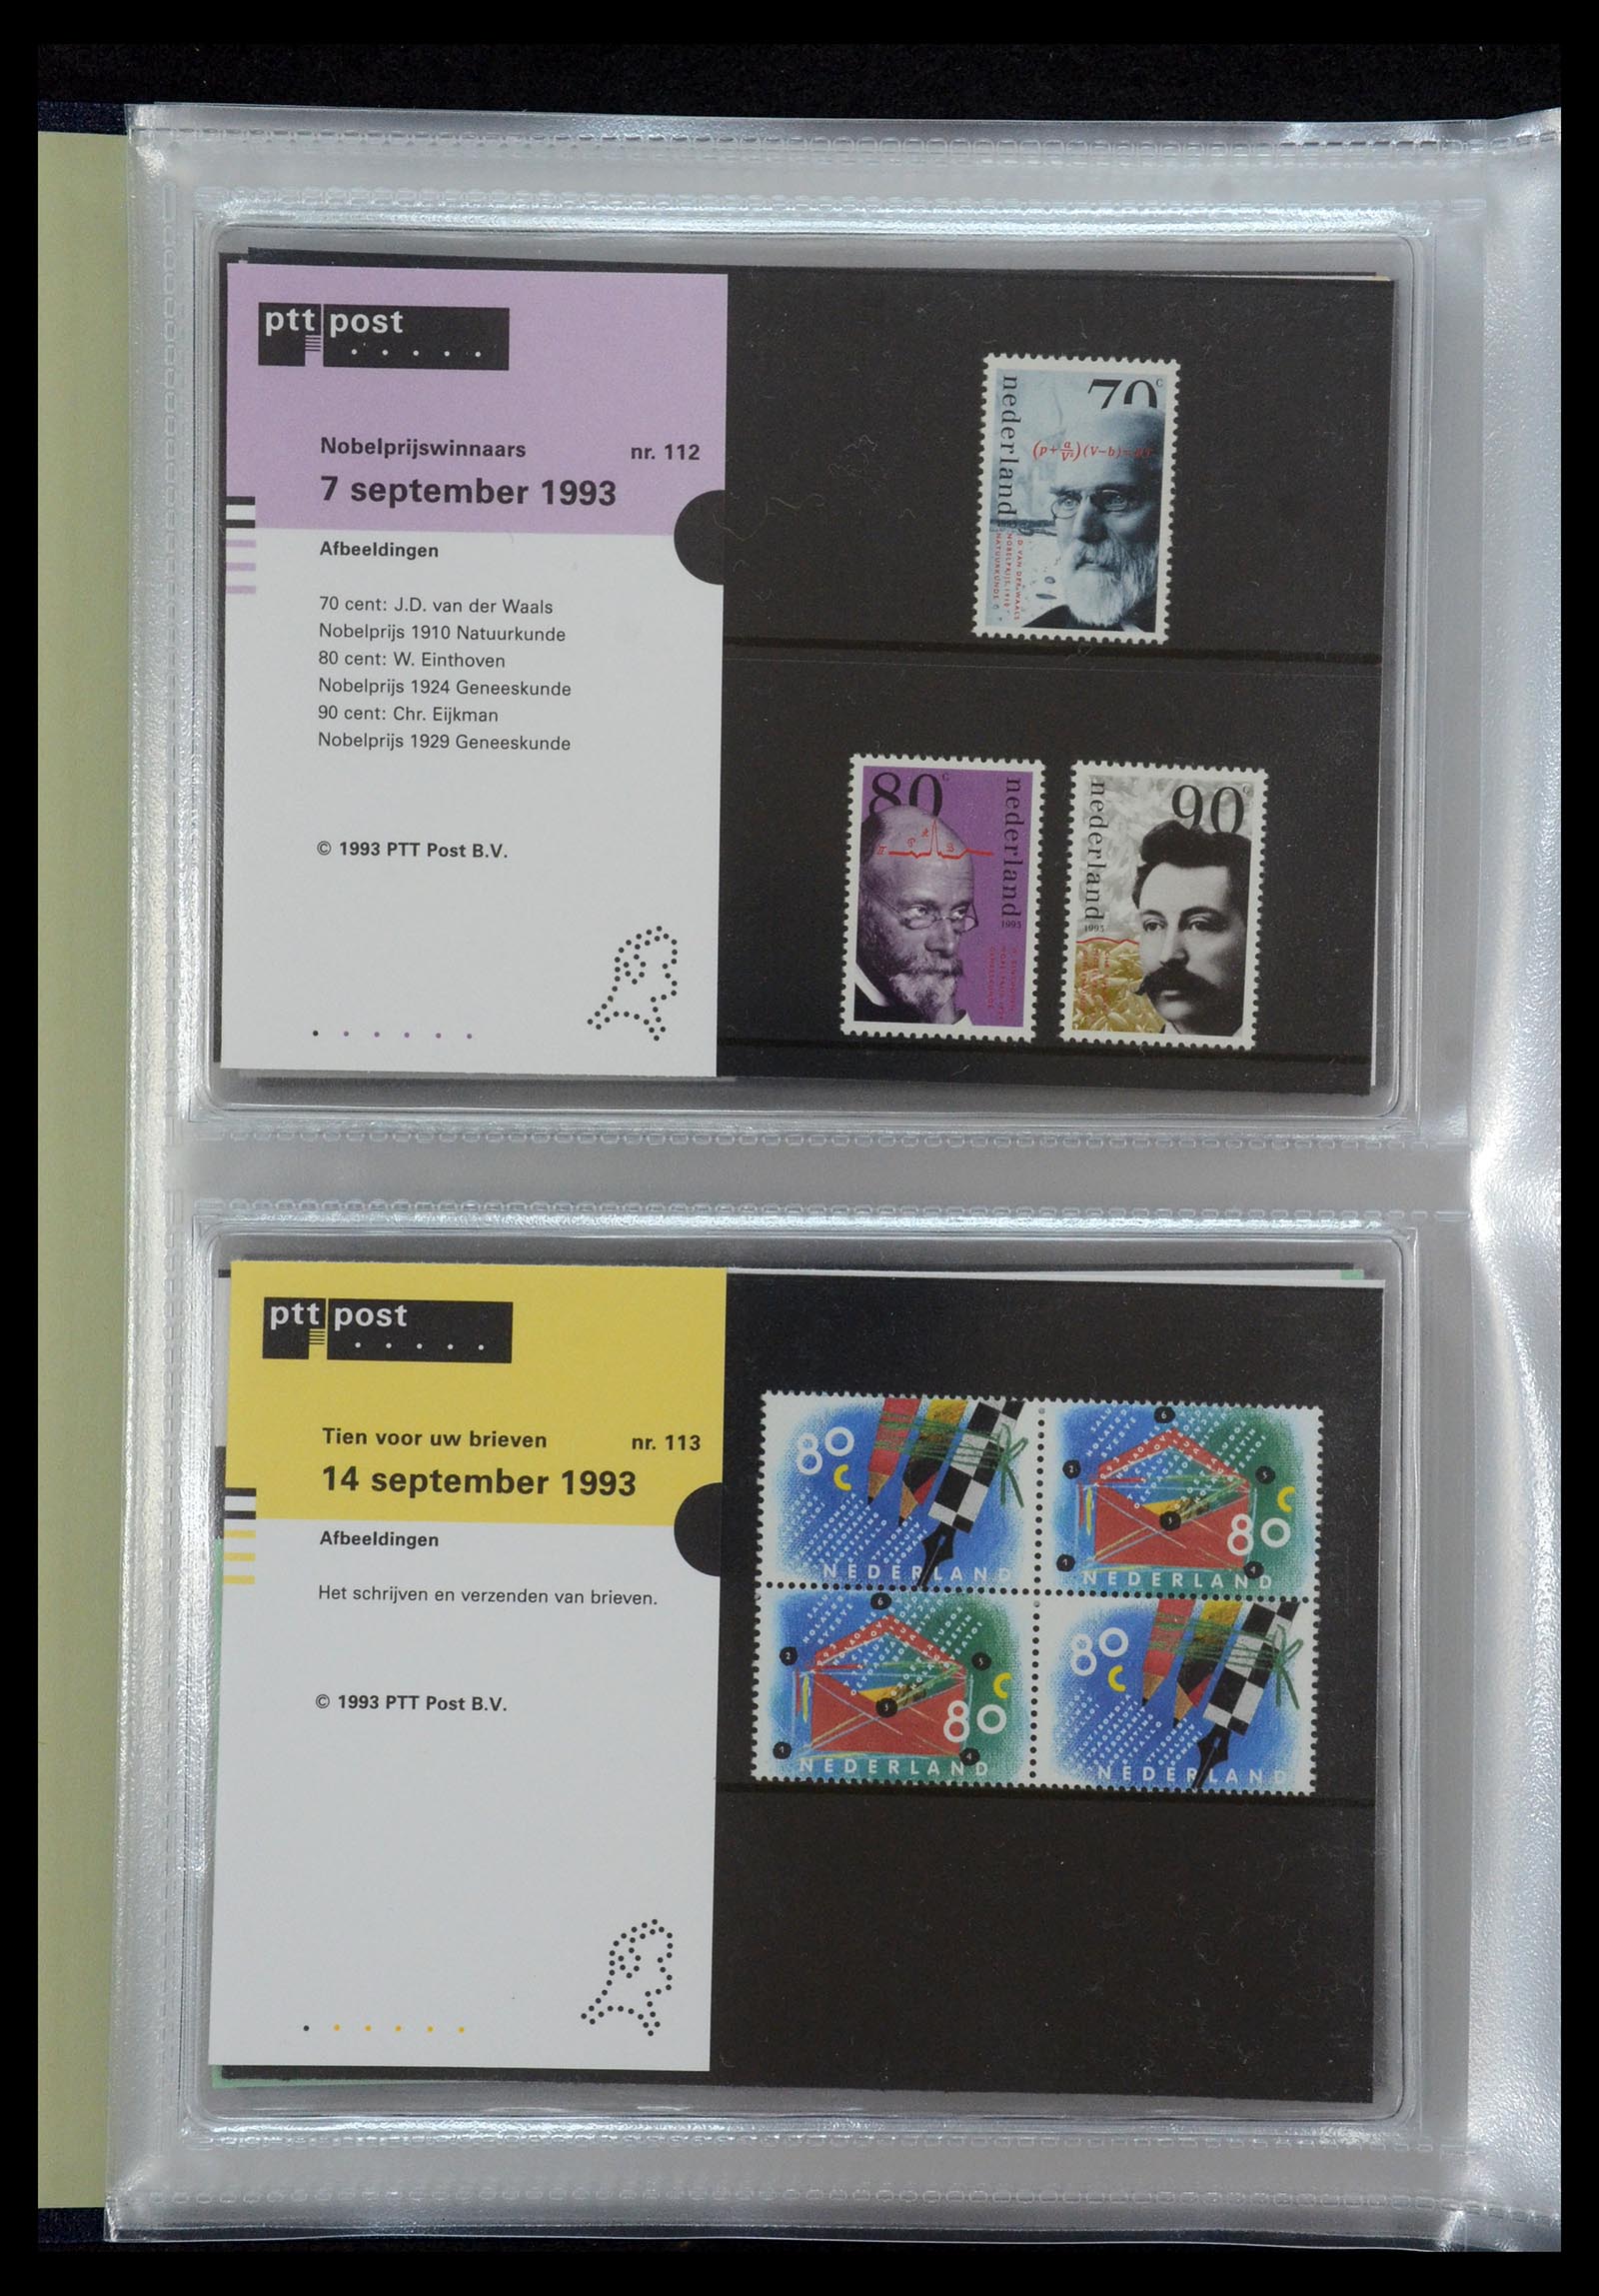 35144 058 - Stamp Collection 35144 Netherlands PTT presentation packs 1982-2021!